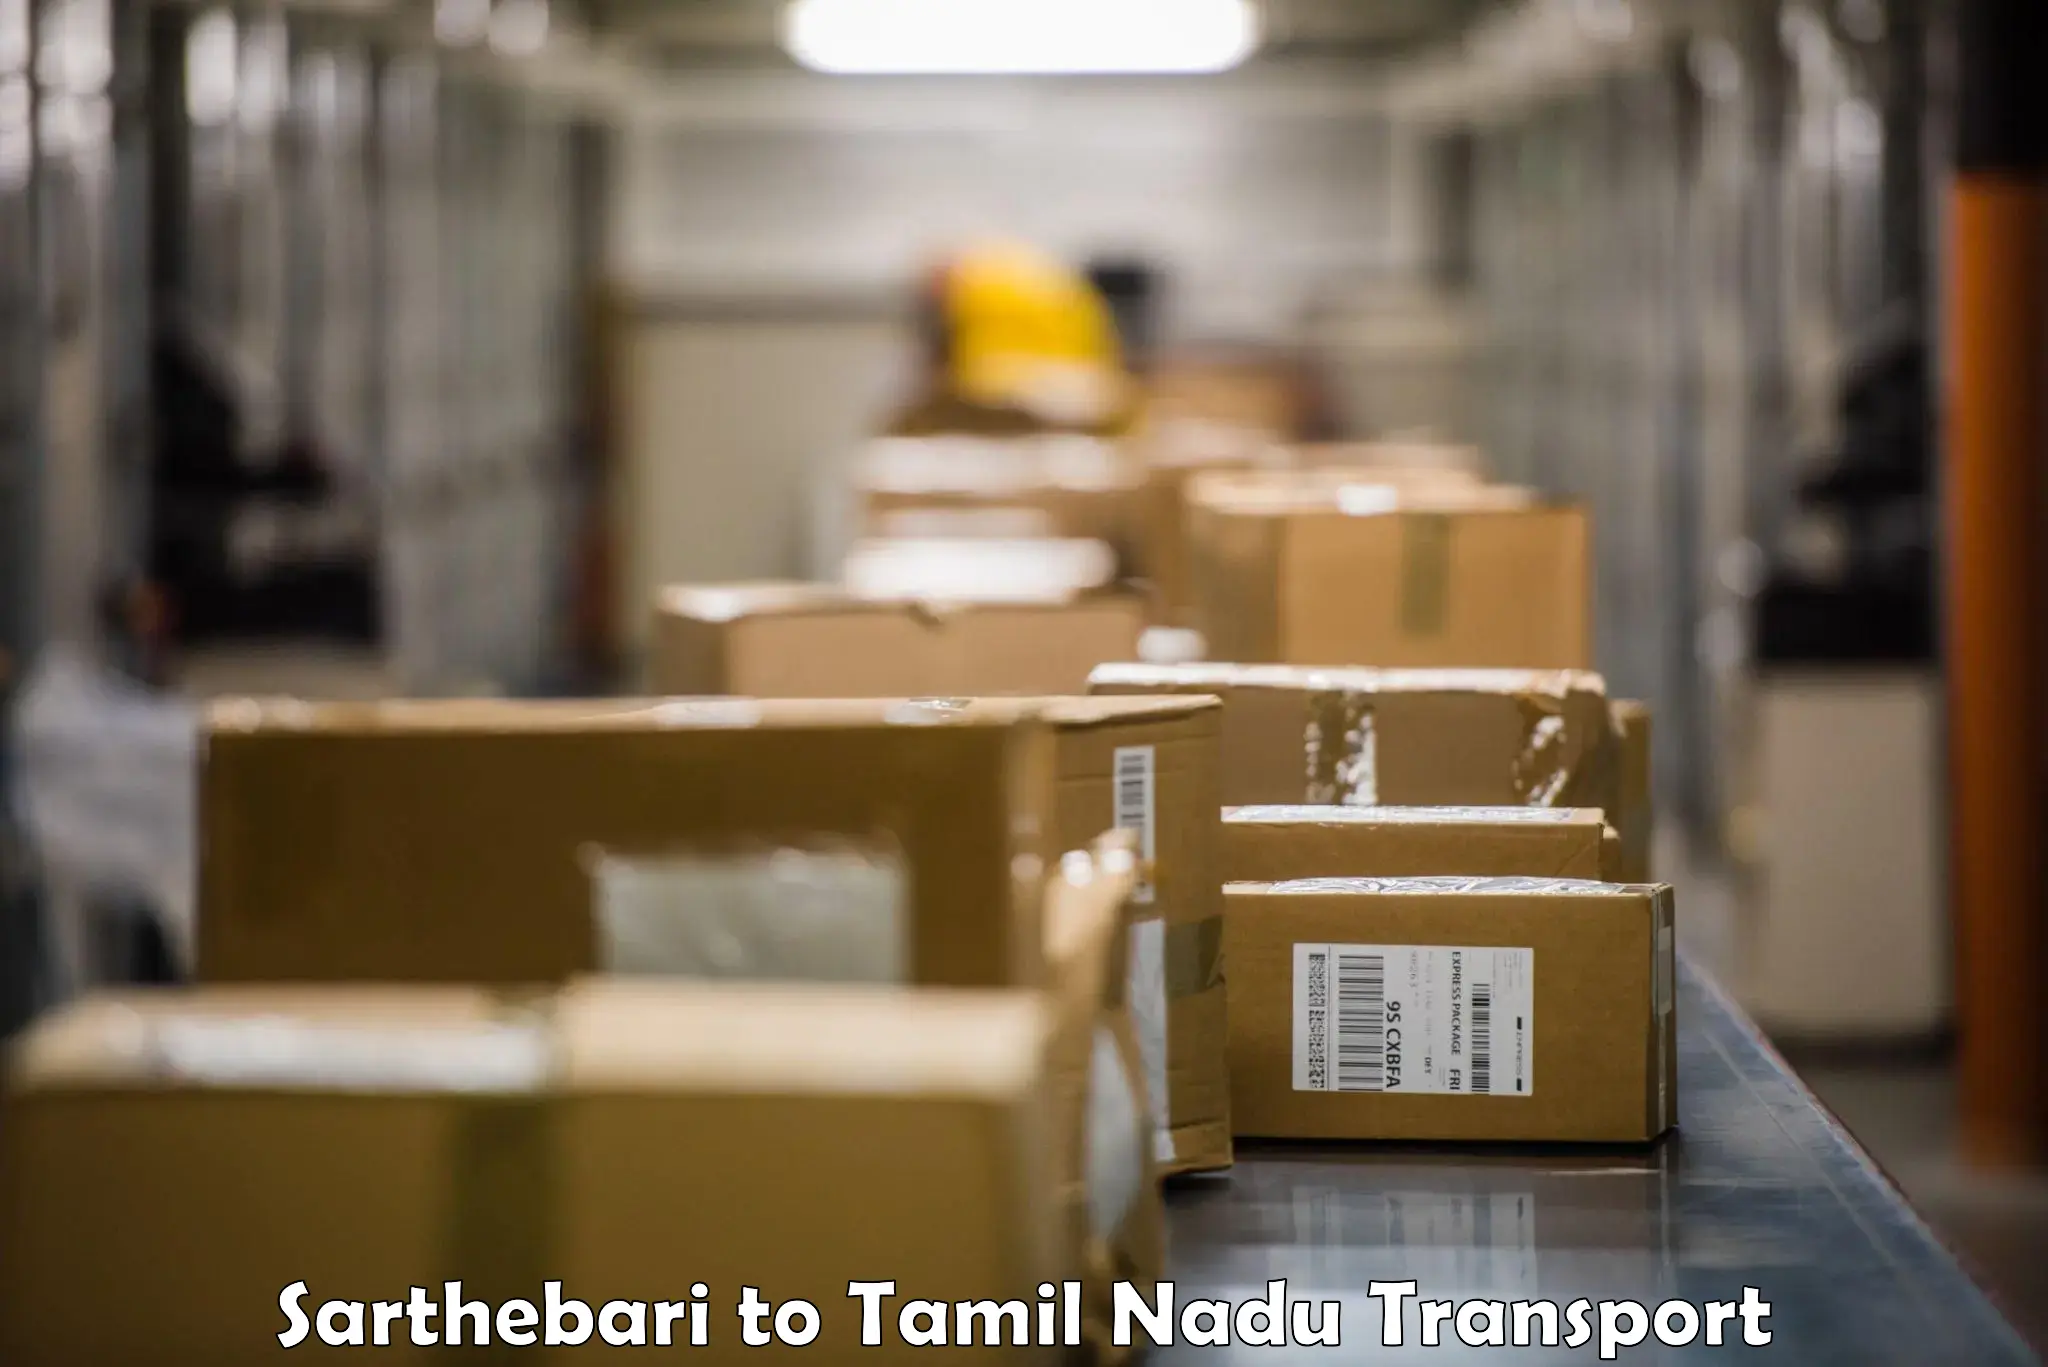 Truck transport companies in India Sarthebari to Rajapalayam